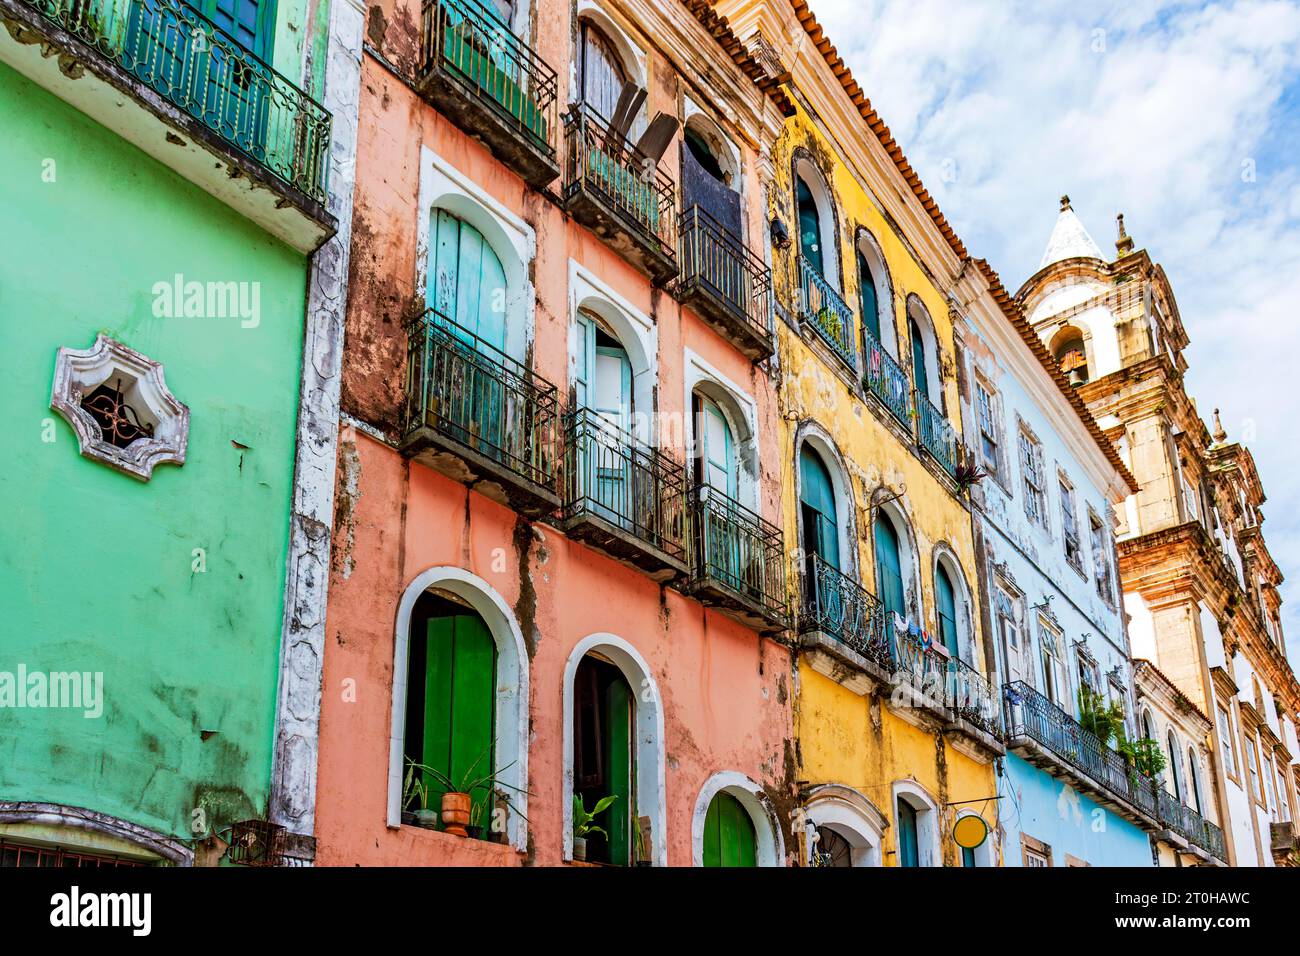 Façades de maisons colorées et église dans le style baroque et colonial endommagé par le temps dans le quartier Pelourinho dans la ville de Salvador, Brésil Banque D'Images